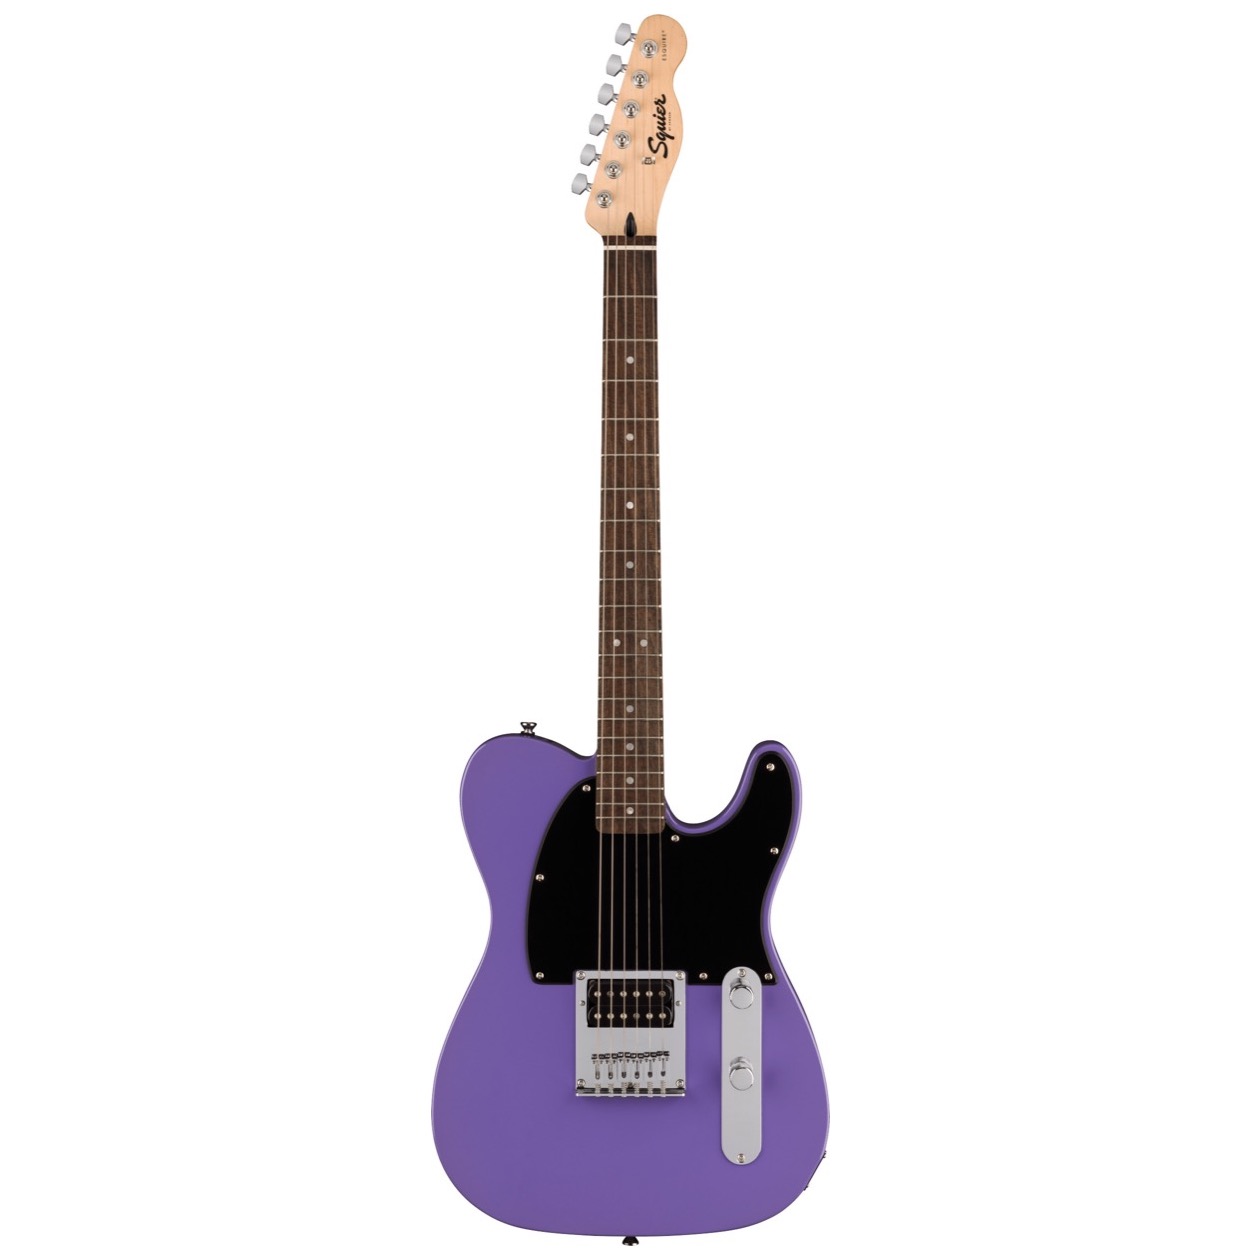 Fender Squier Sonic Esquire H, Laurel Fingerboard, Black Pickguard, Ultraviolet NIEUW VOOR 2023